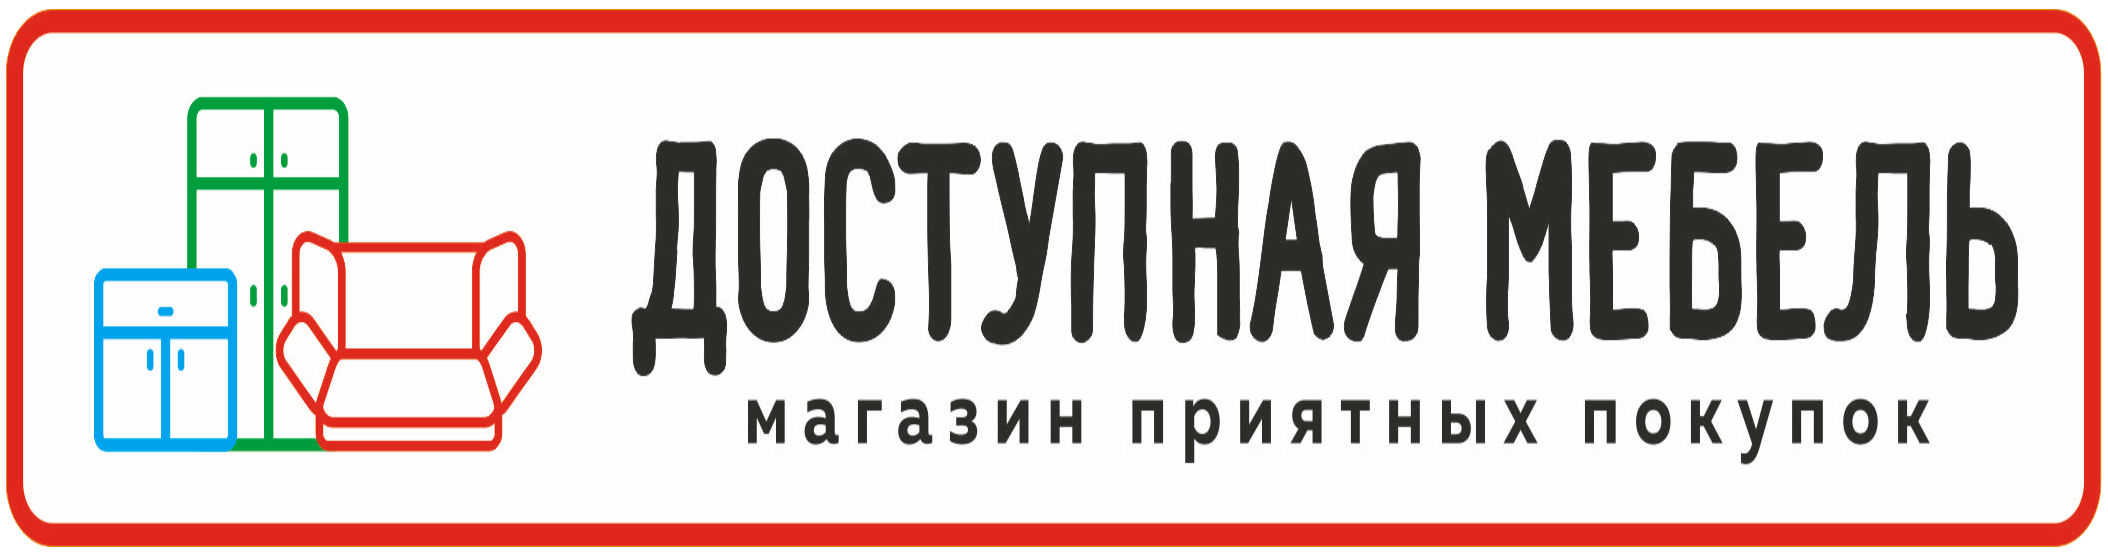 Магазин Кухонька Екатеринбург